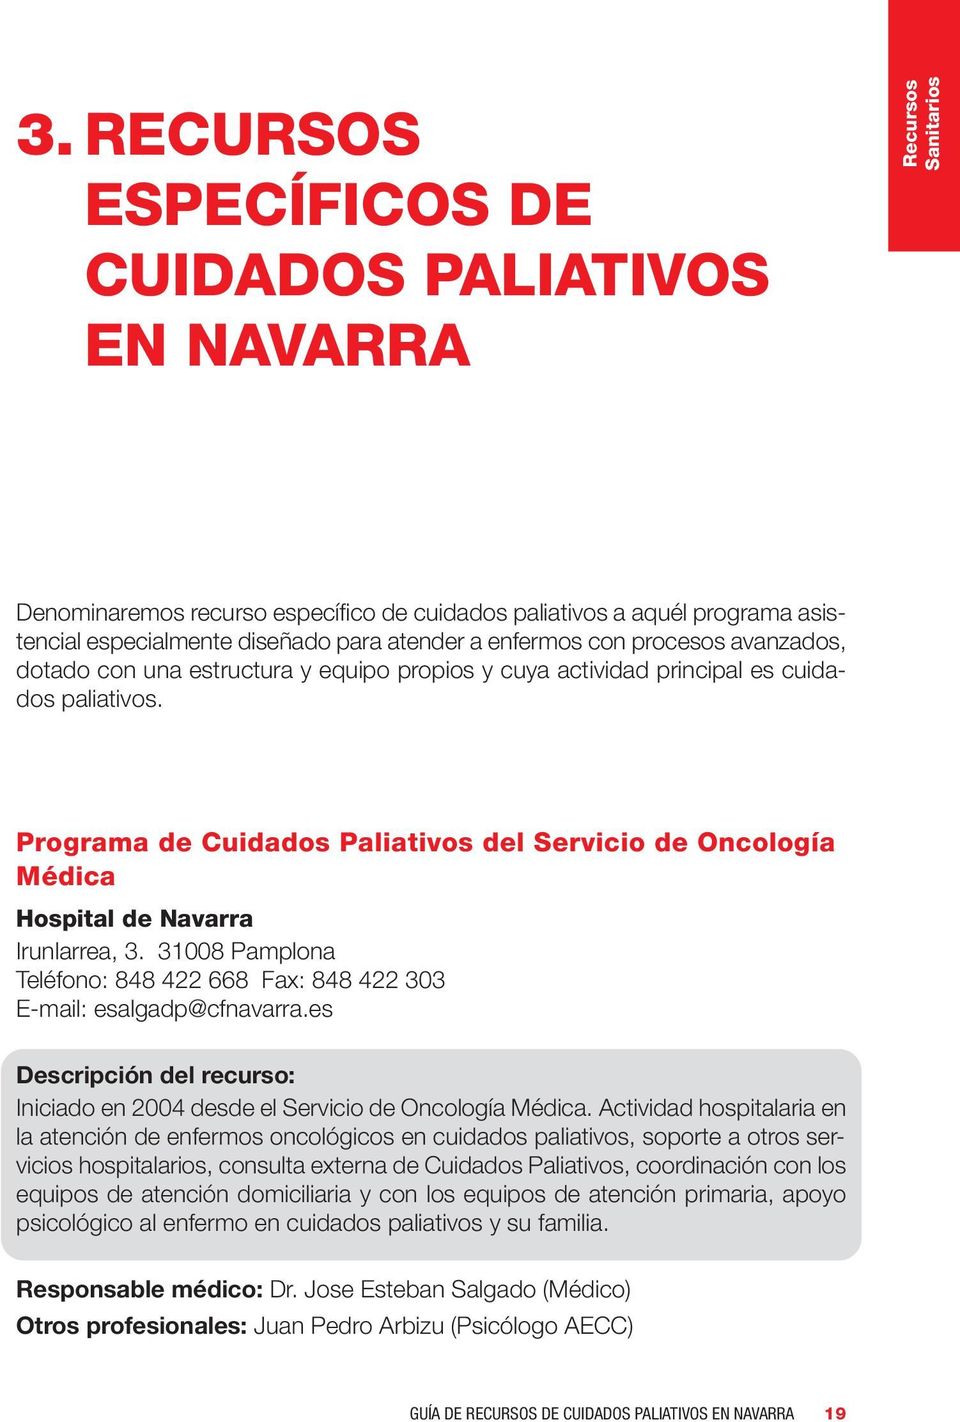 Programa de Cuidados Paliativos del Servicio de Oncología Médica Hospital de Navarra Irunlarrea, 3. 31008 Pamplona Teléfono: 848 422 668 Fax: 848 422 303 E-mail: esalgadp@cfnavarra.